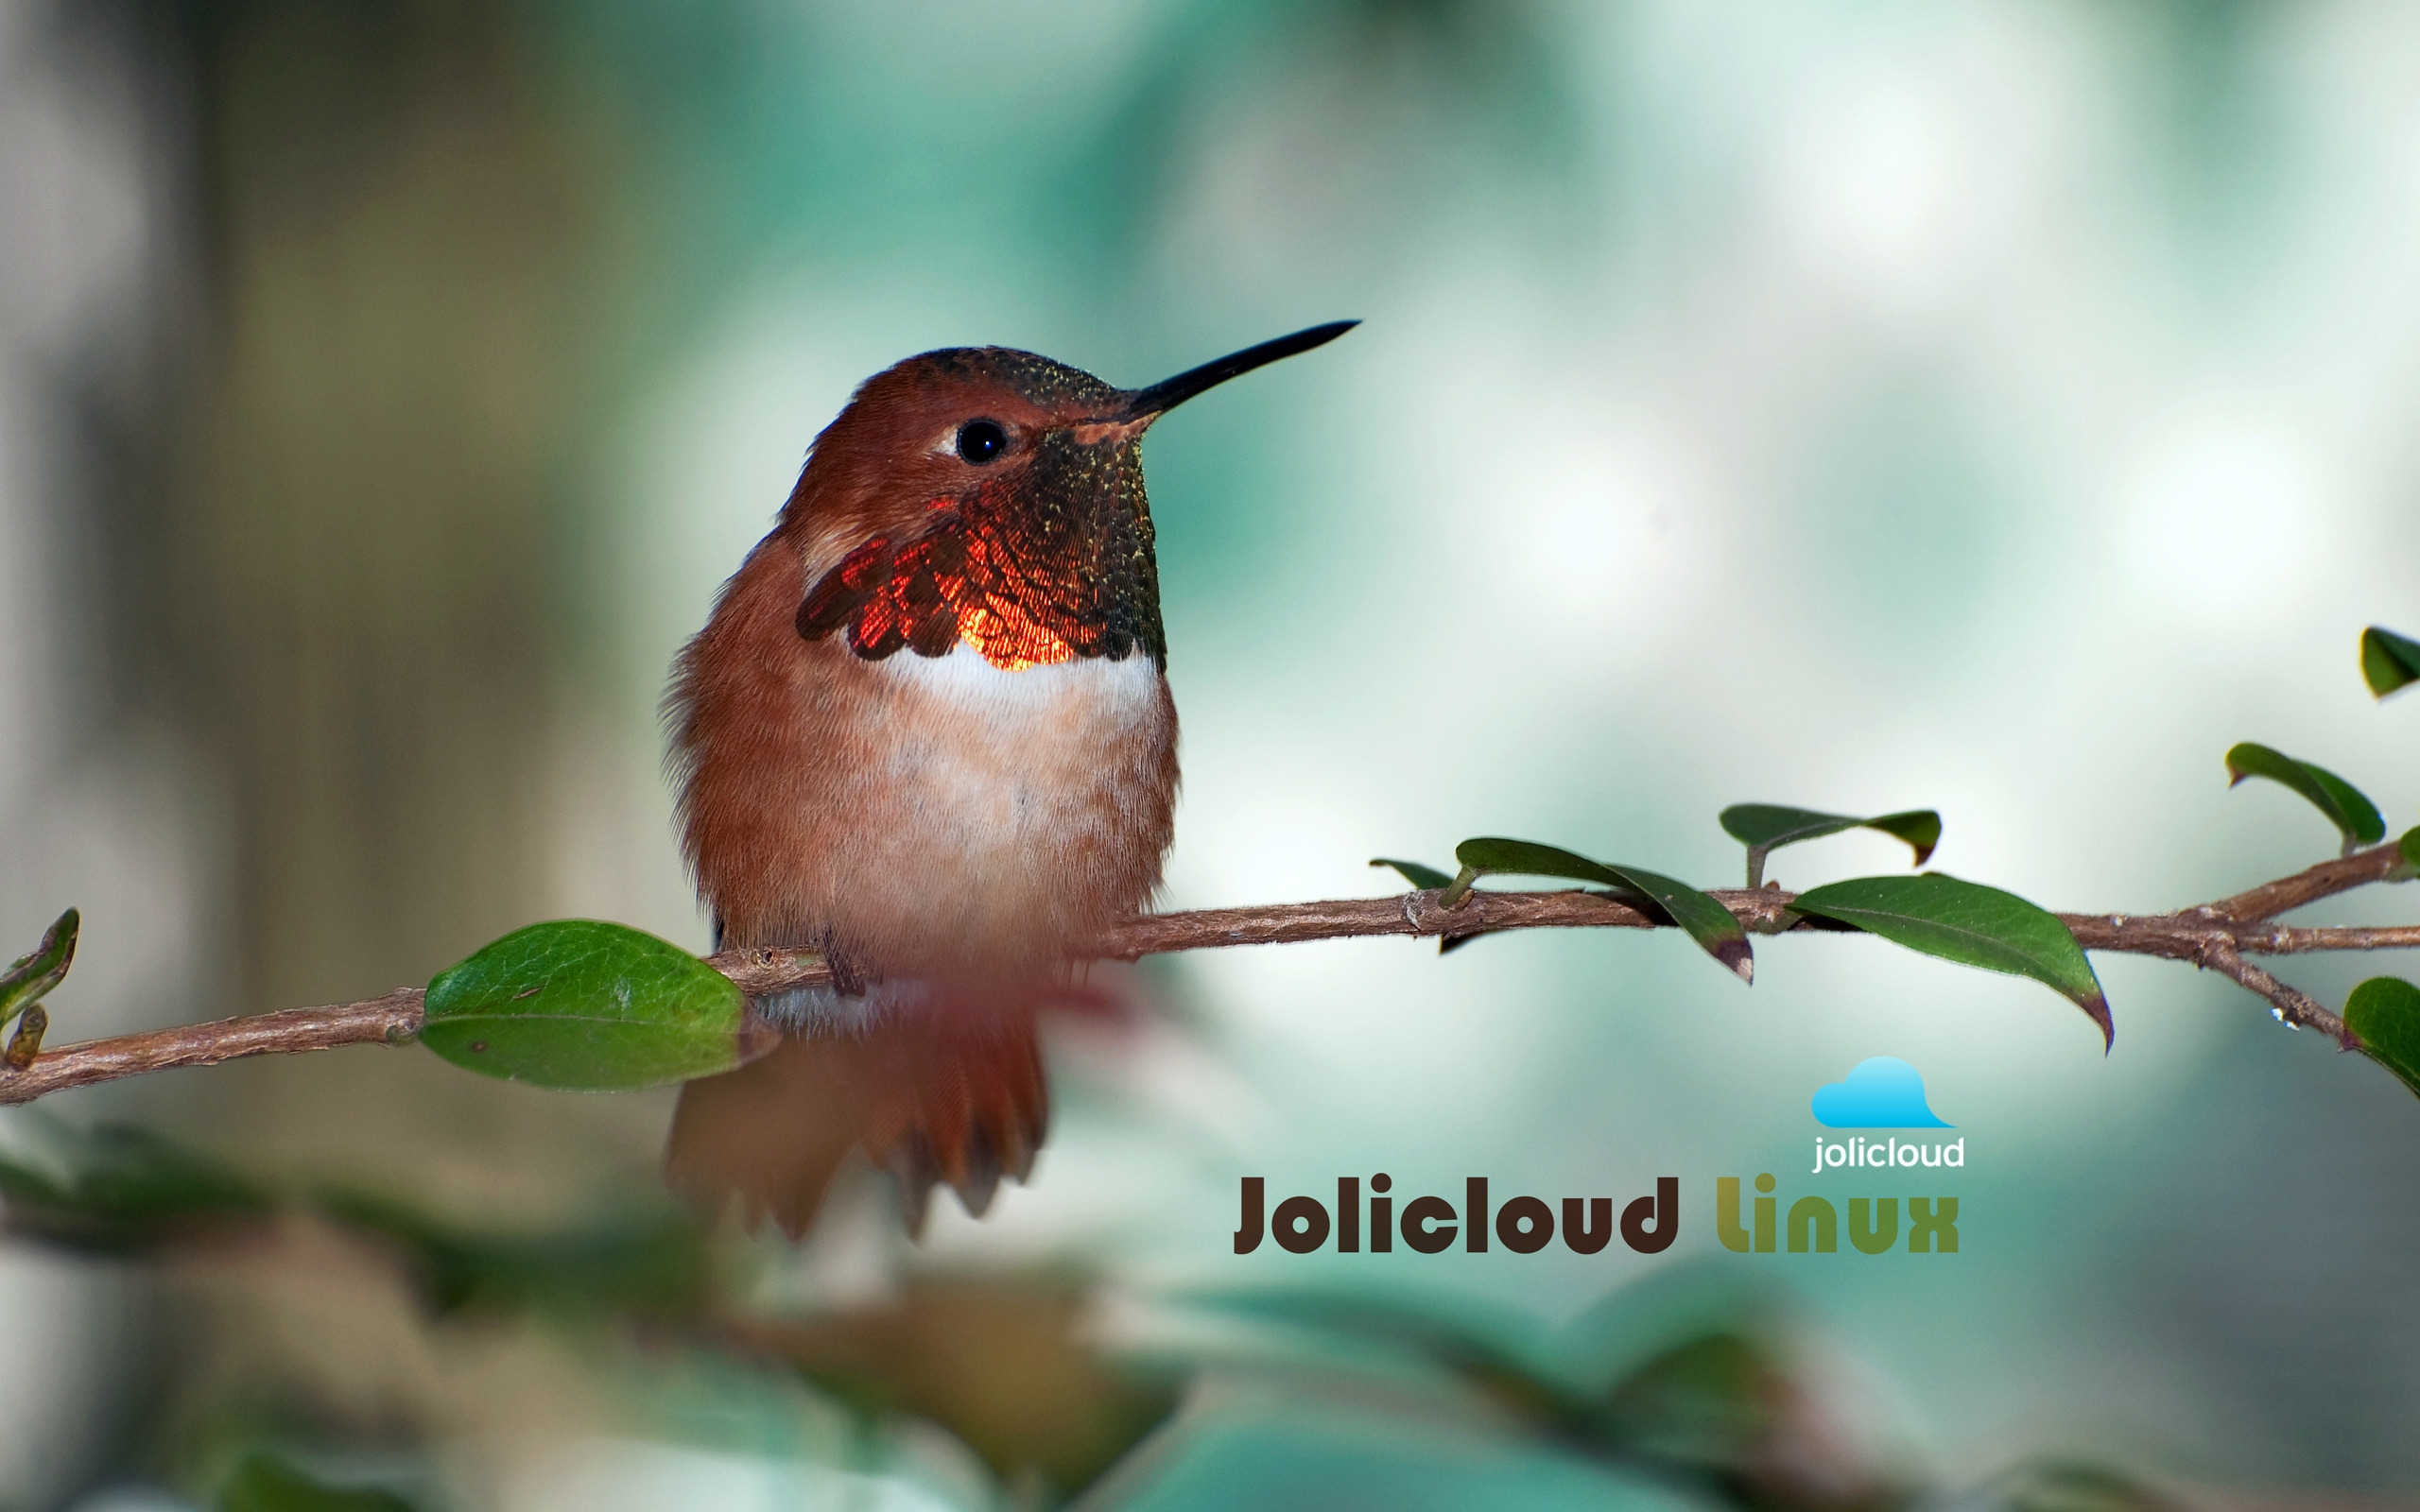 Jolicloud Linux Hummingbird for 2560 x 1600 widescreen resolution